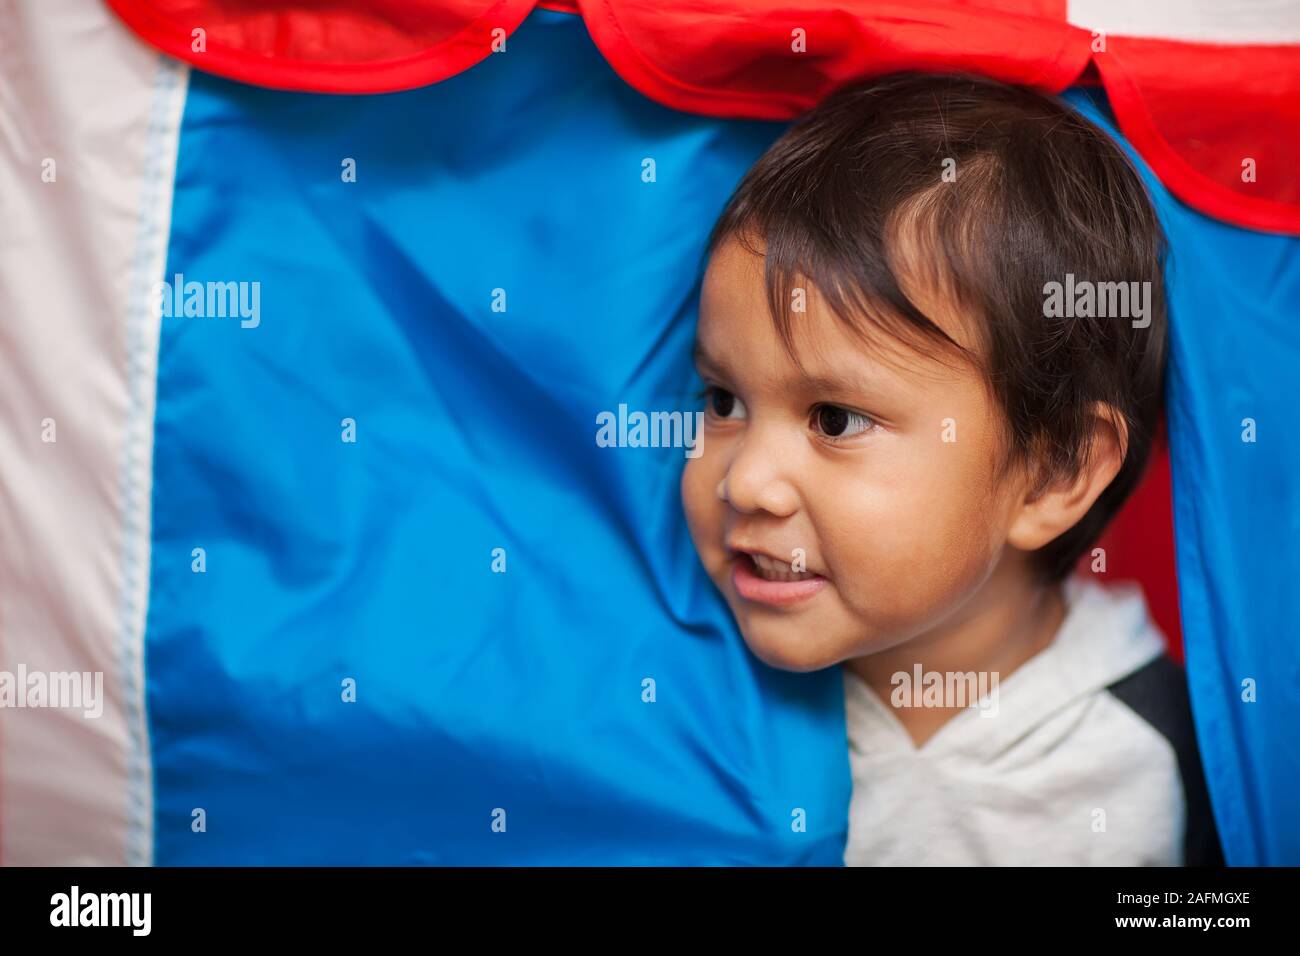 Il volto di un bambino con capelli wispy, tra l'ingresso ad un gioco tenda che ha colori rosso, bianco e blu. Foto Stock